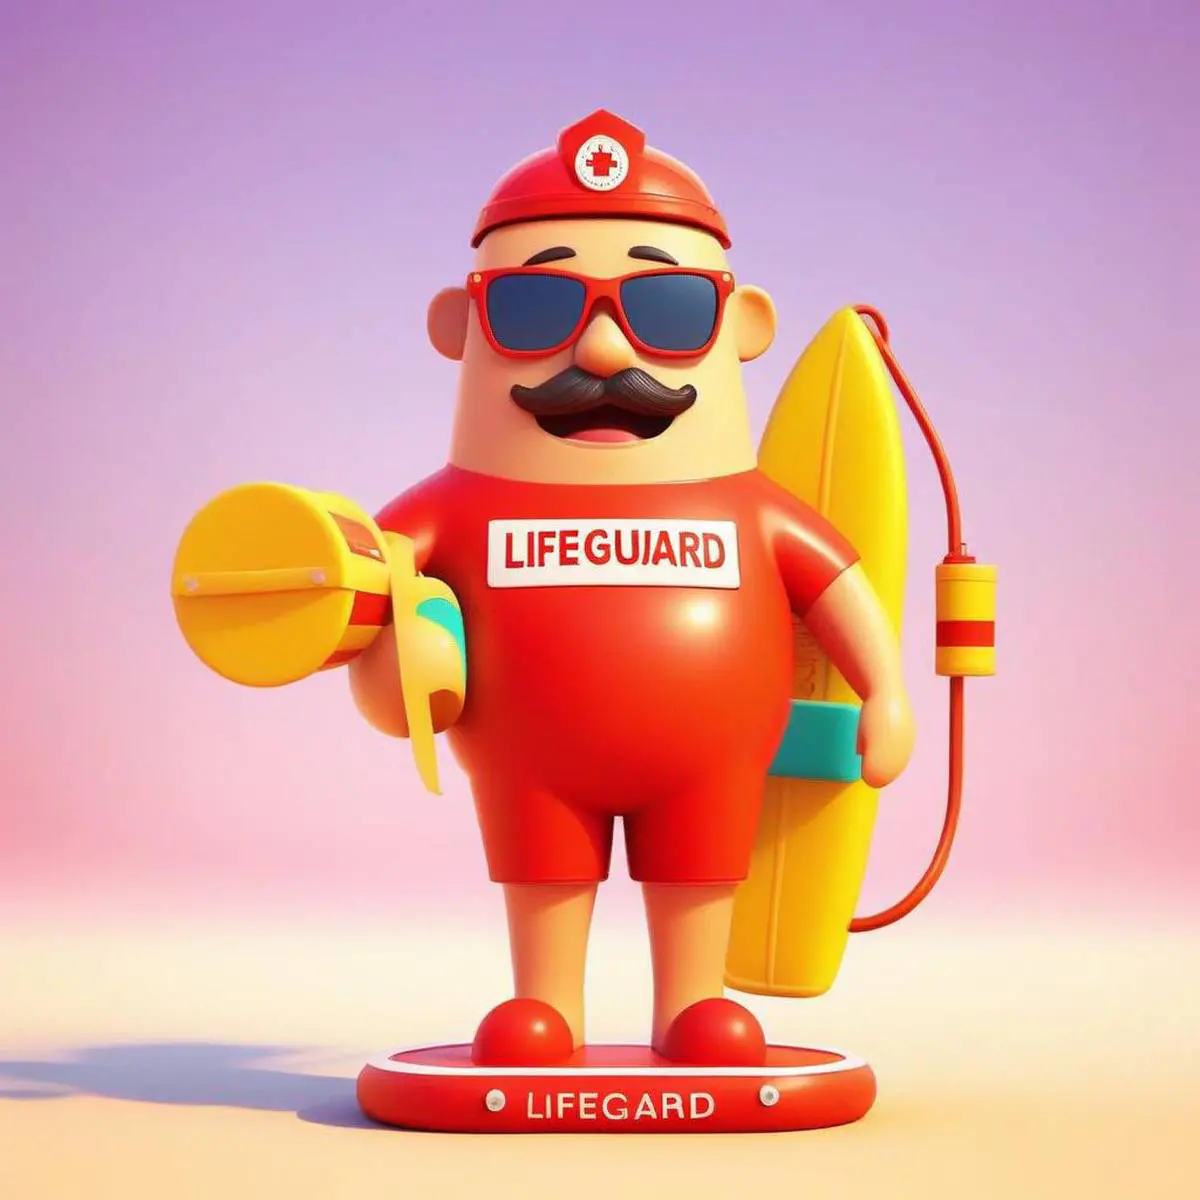 Lifeguard puns